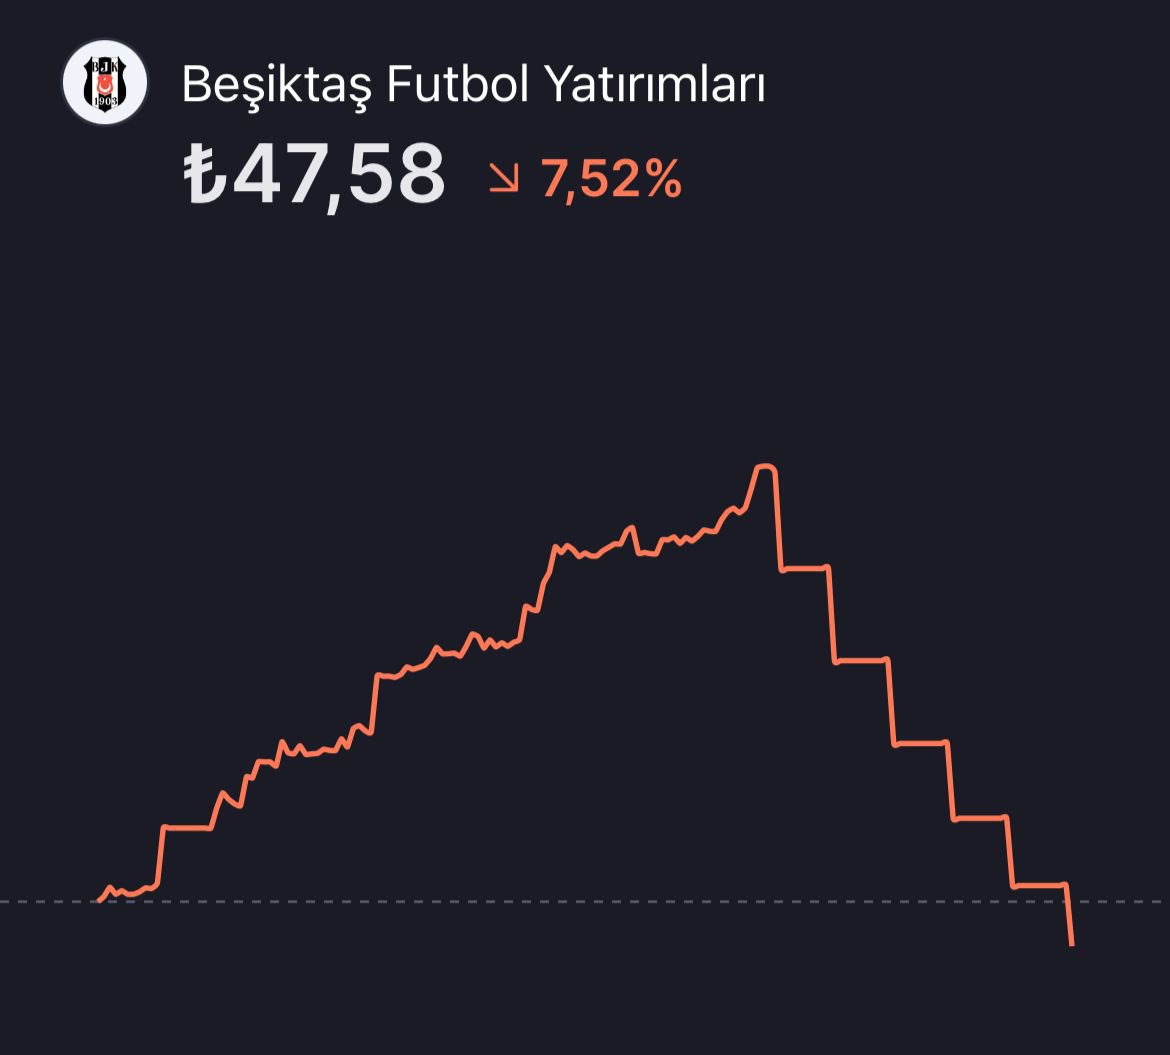 Borsa İstanbul’da Beşiktaş hissesi 6 günde 89.30 TL’den 47.58 TL’ye geriledi.